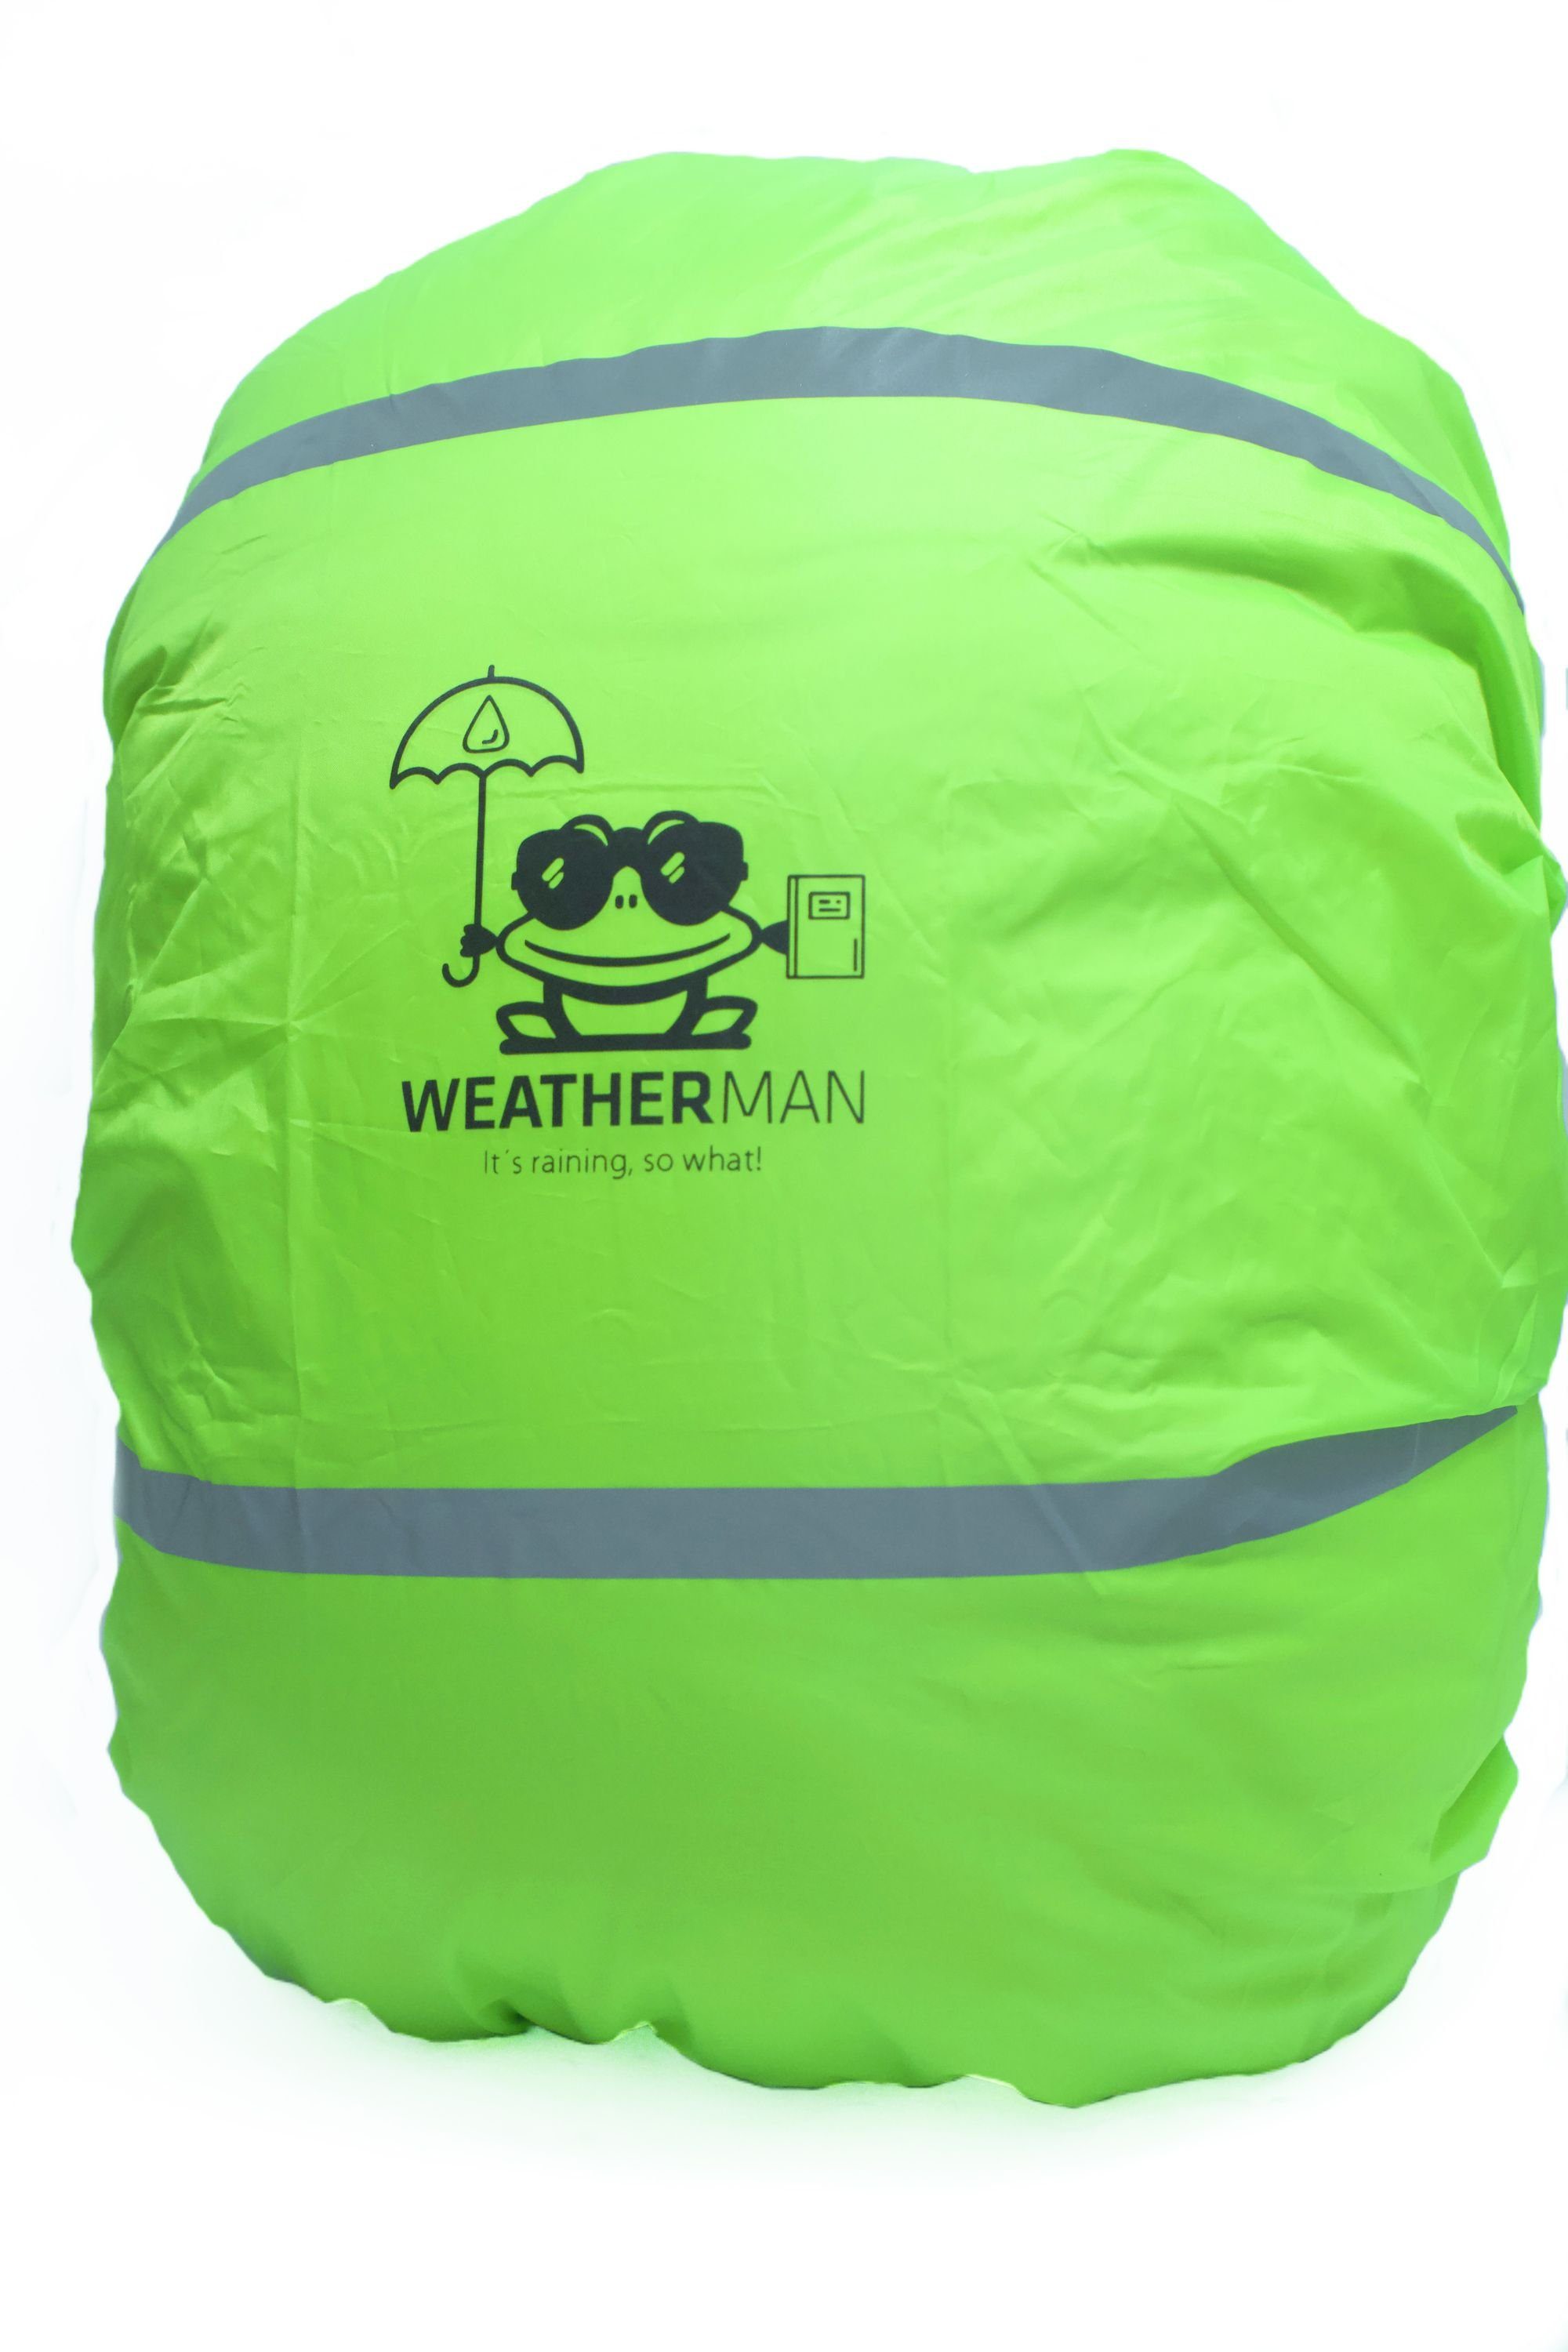 WEATHERMAN Rucksack-Regenschutz Regenhülle für Schulranzen und Schultaschen